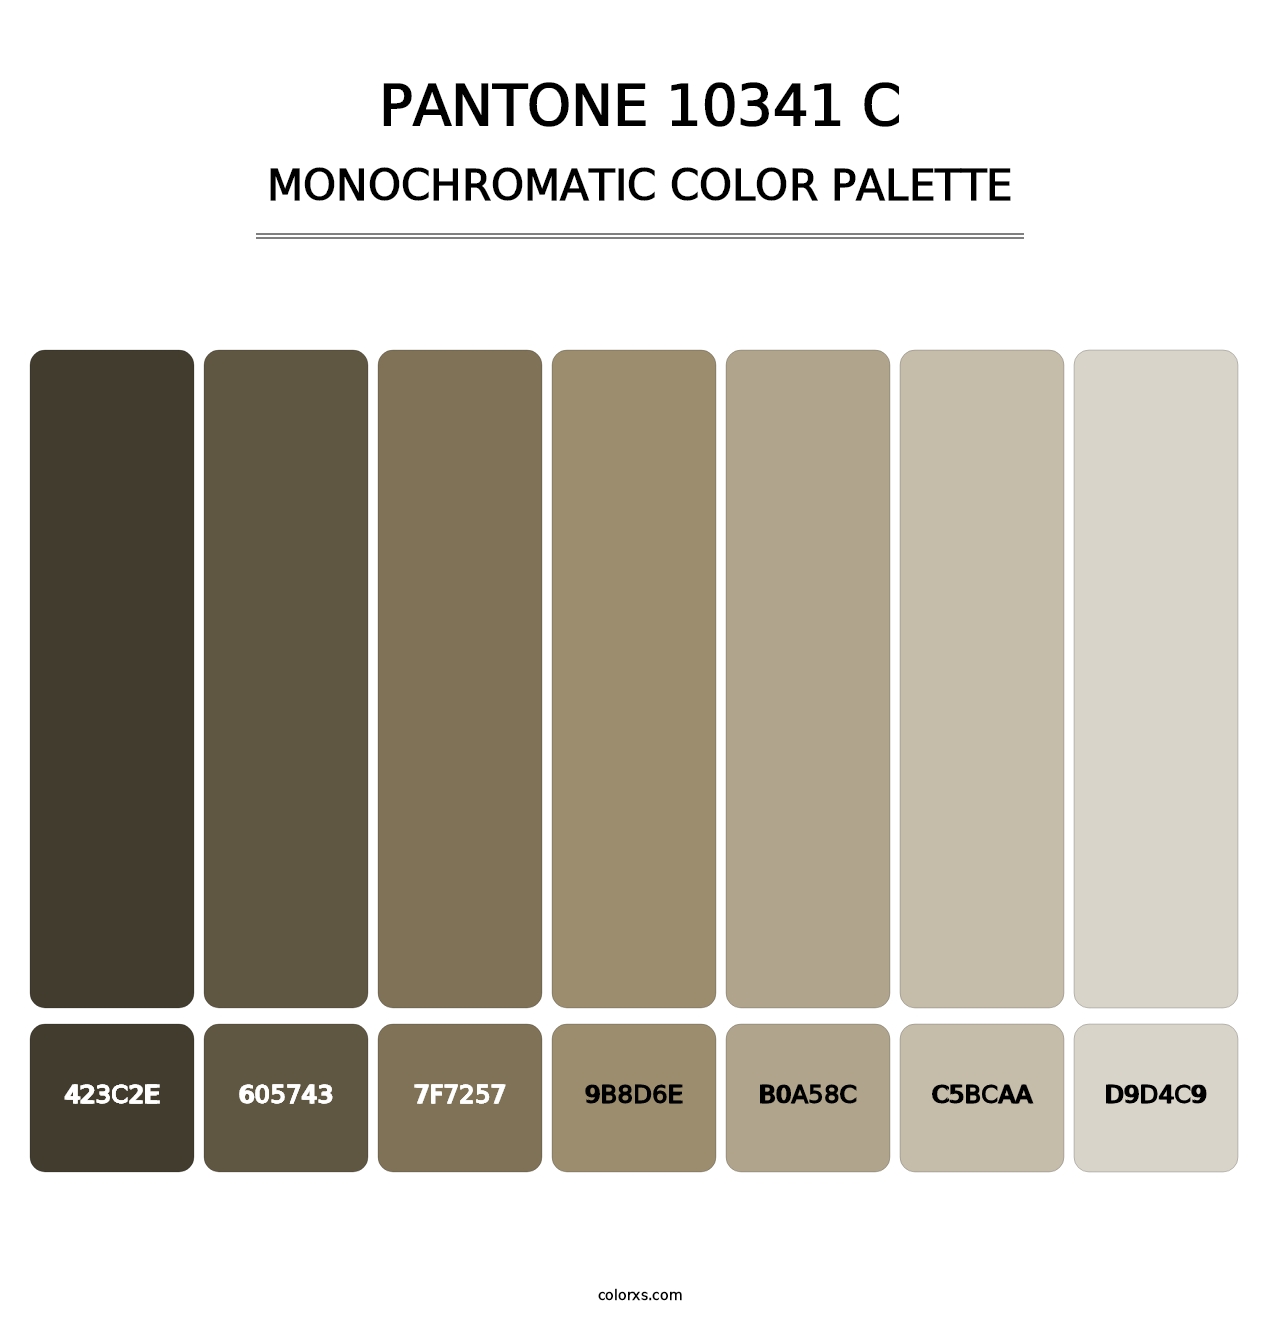 PANTONE 10341 C - Monochromatic Color Palette